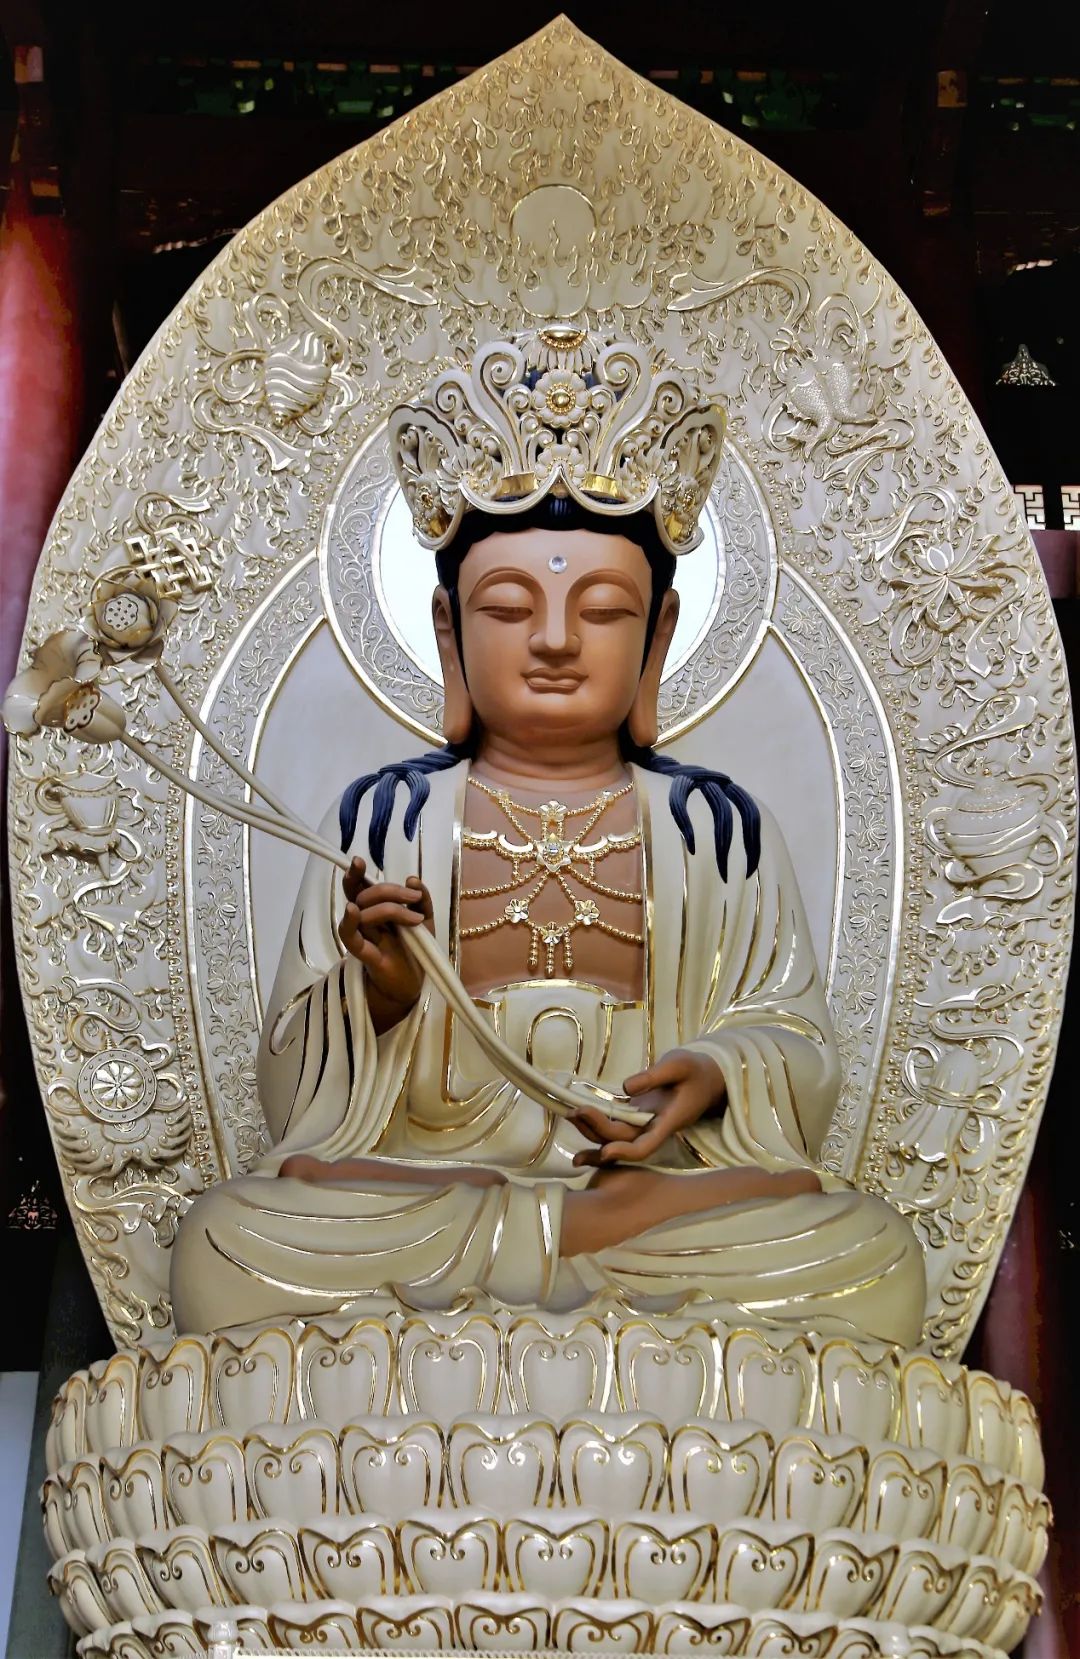 持经观音菩萨立像 | 慈山寺佛教艺术博物馆